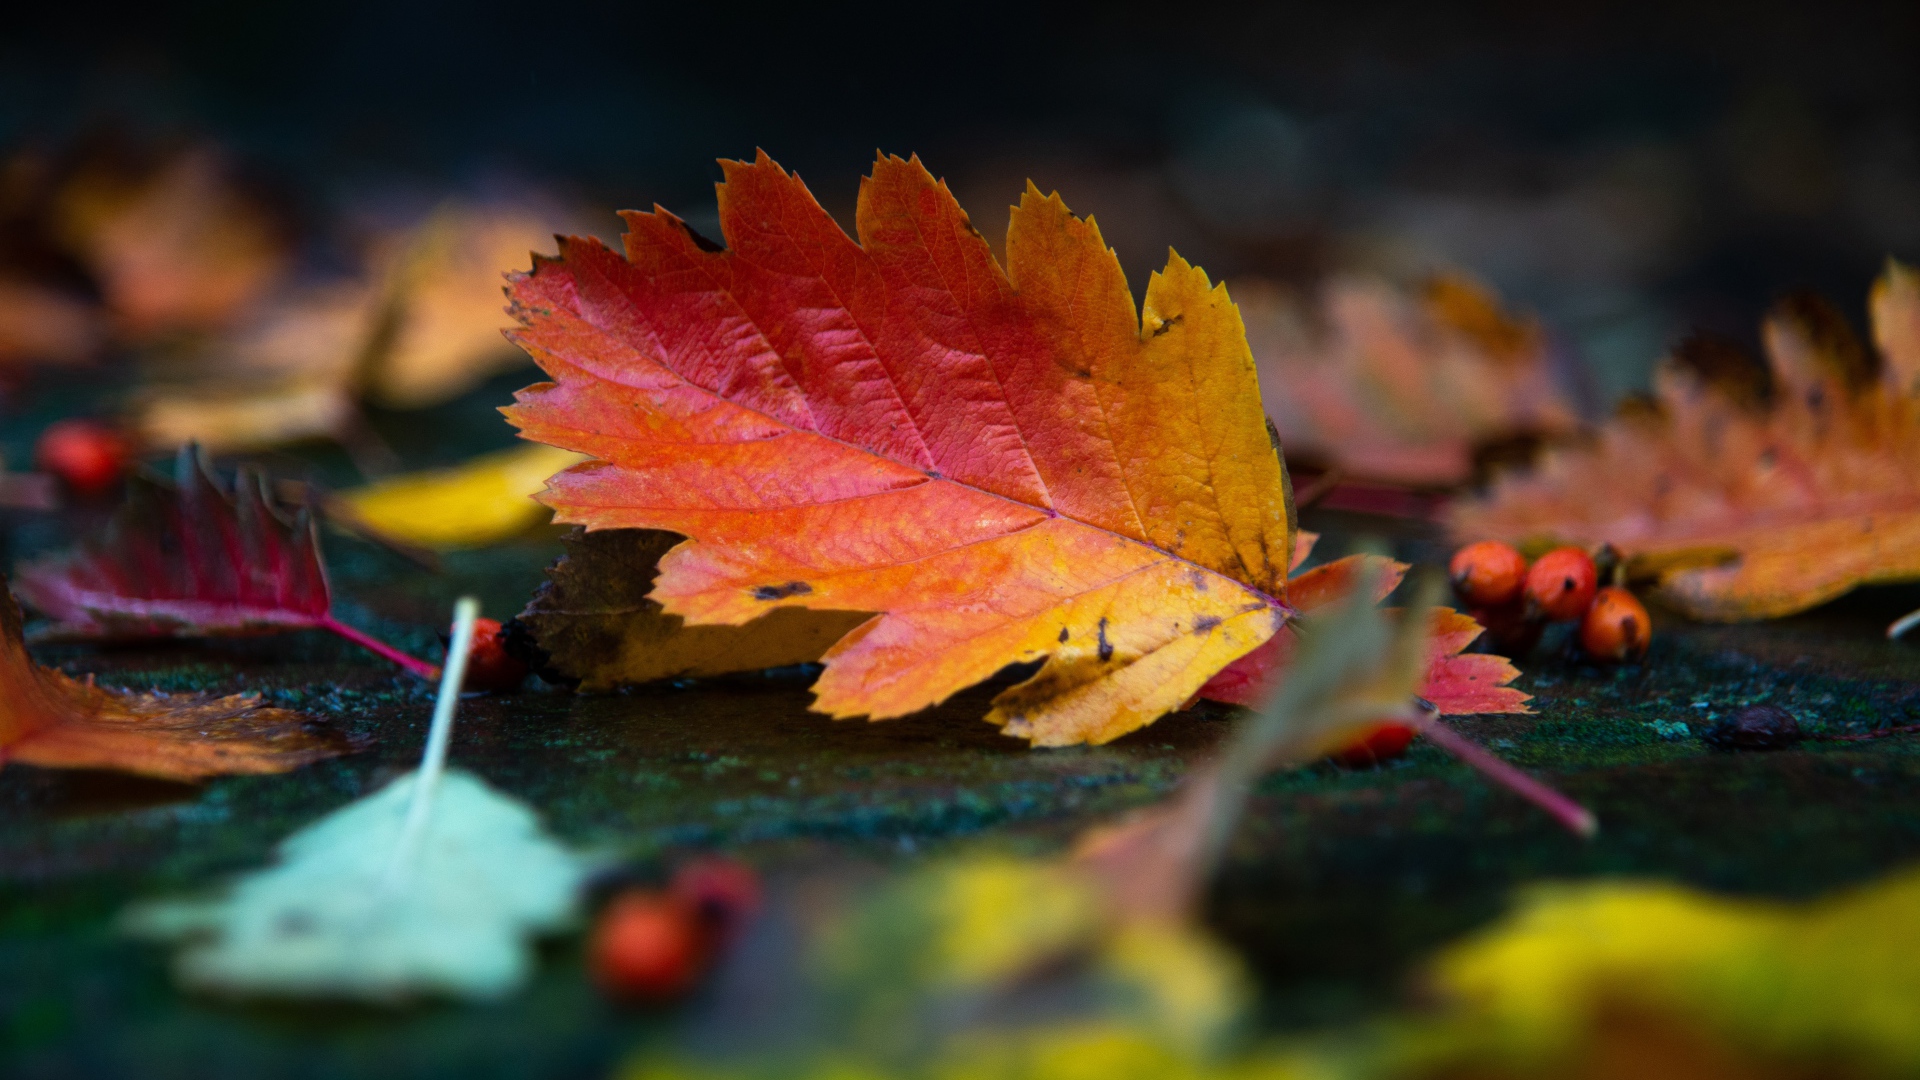 Красивый оранжевый лист лежит на мокрой земле осенью 